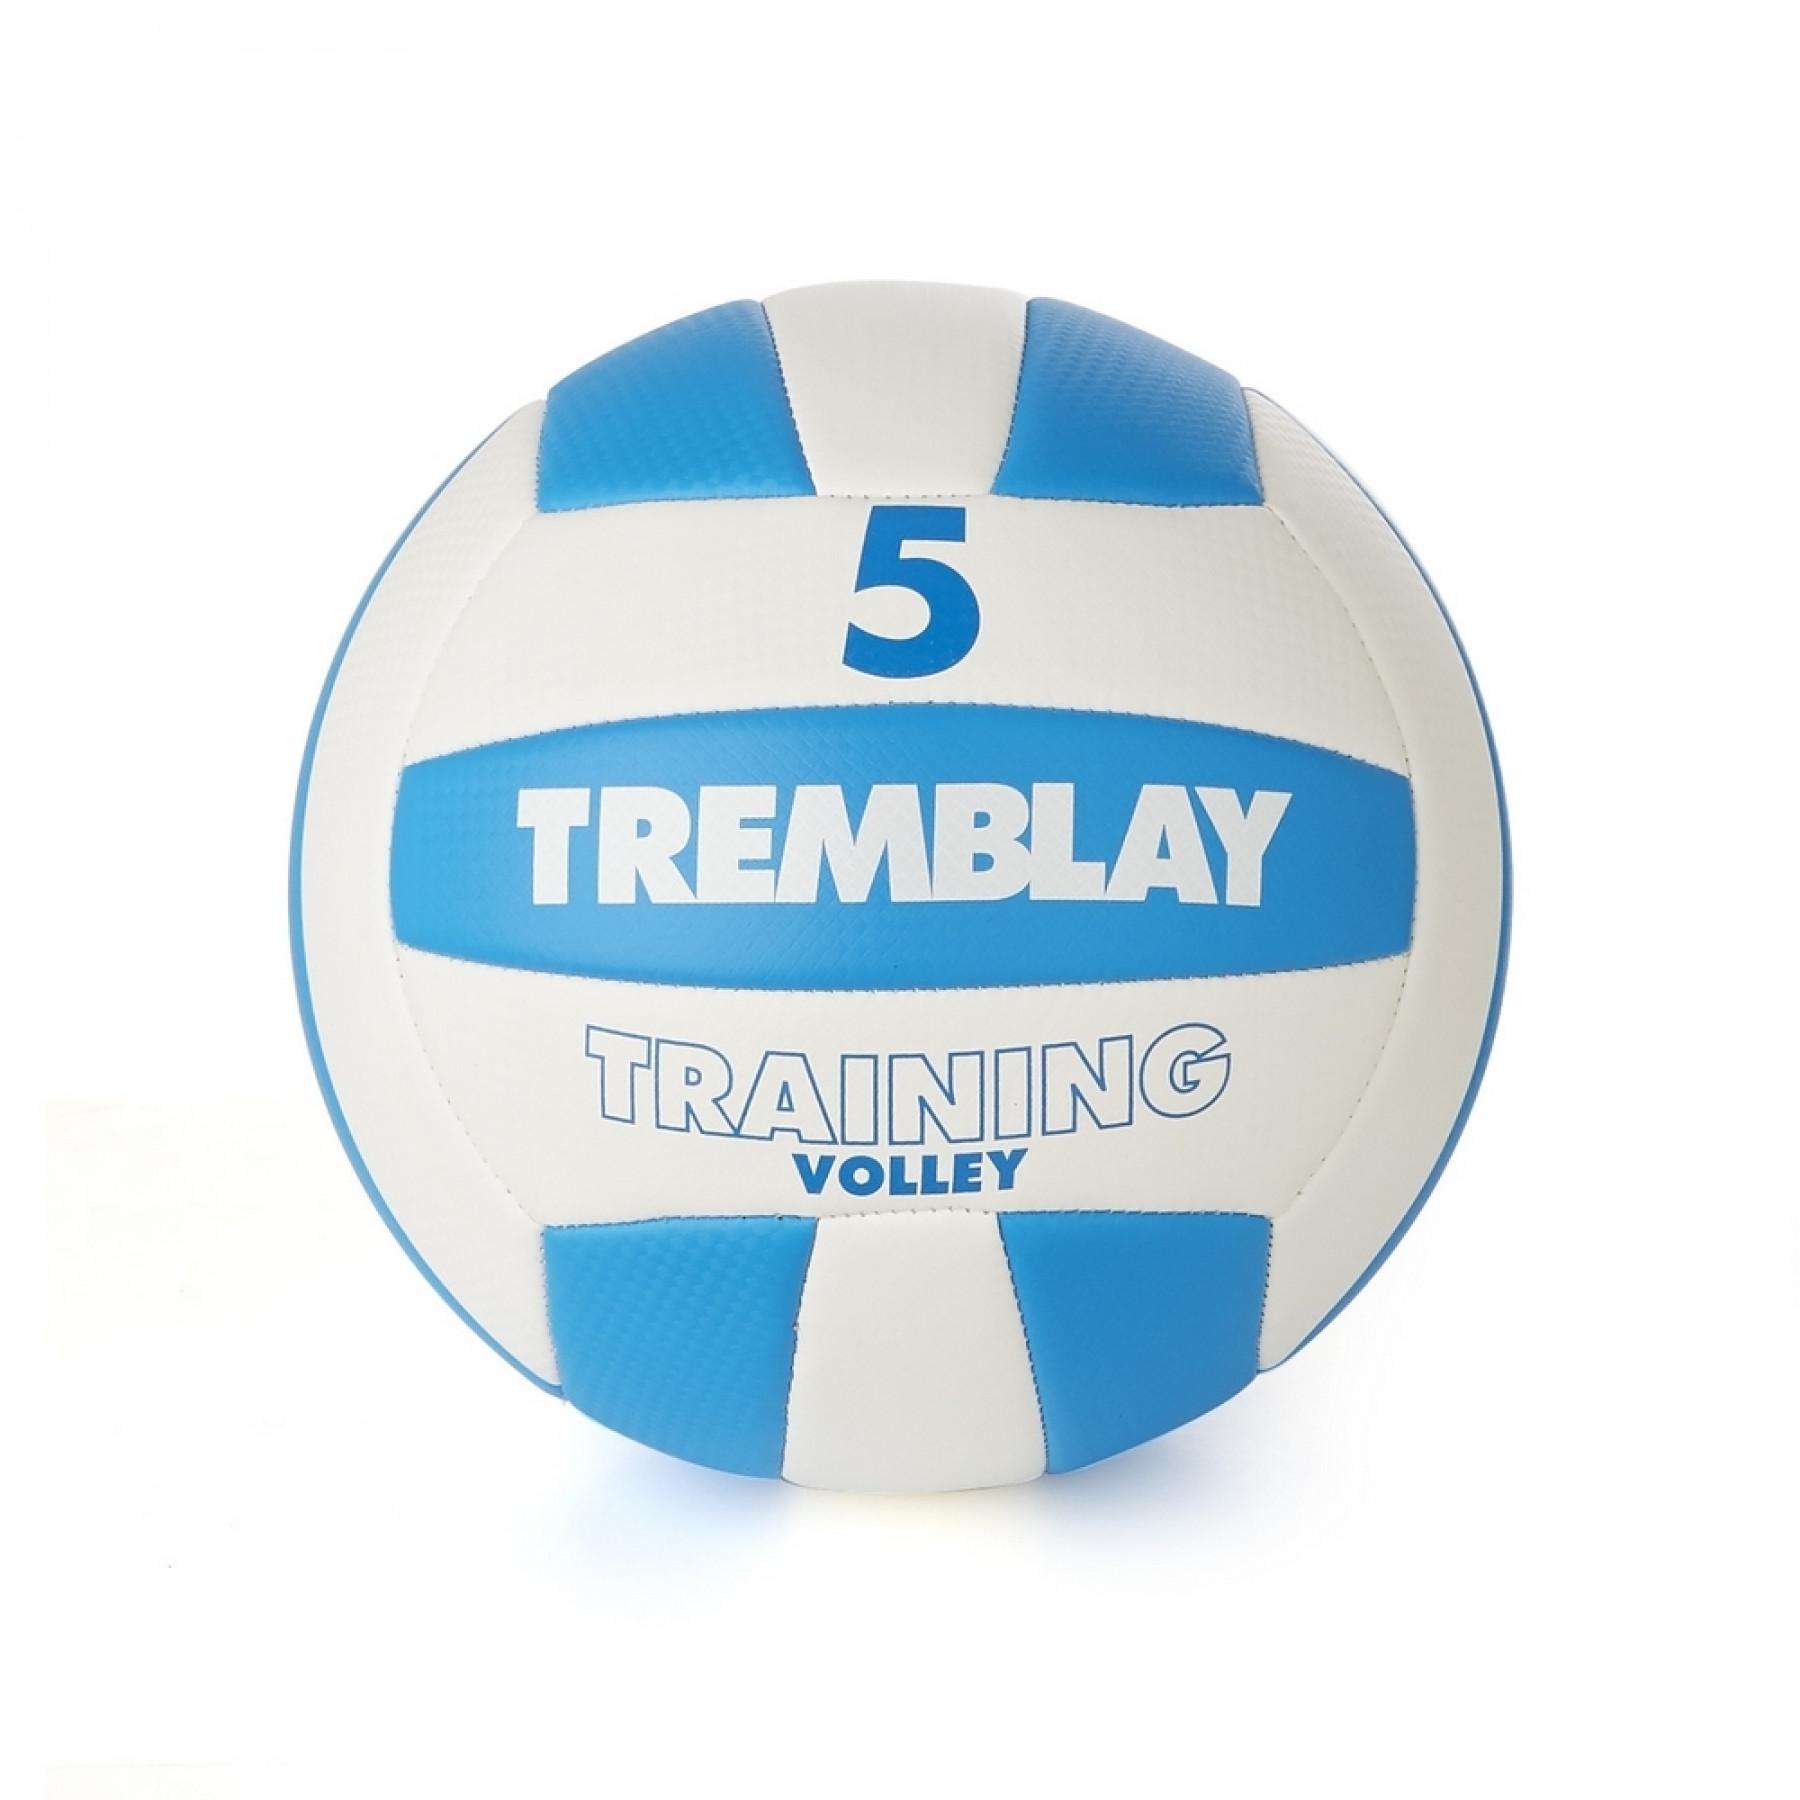 Tremblay tränar volleyboll